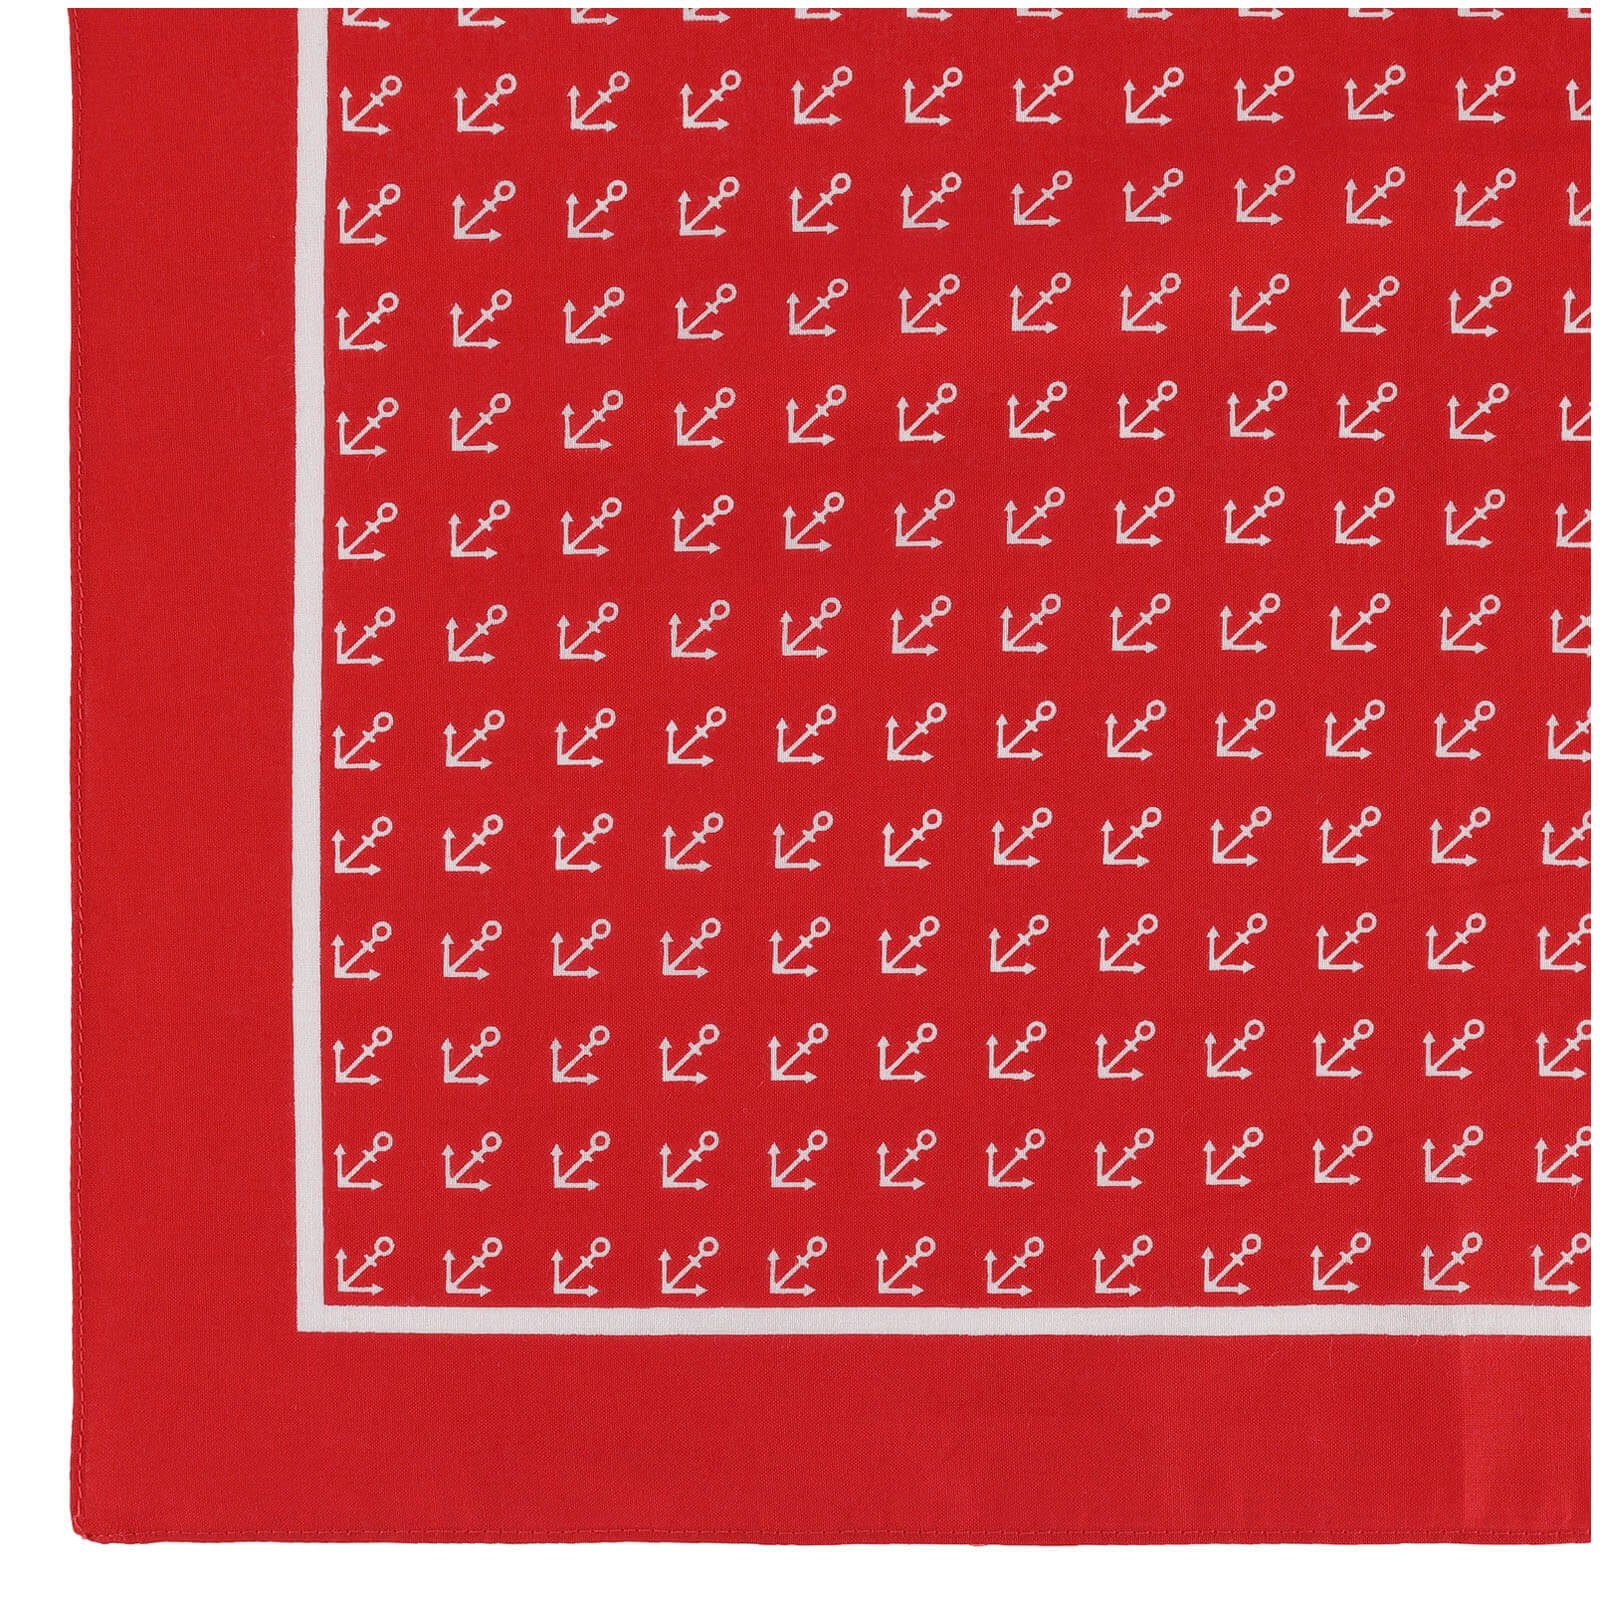 Modetuch, 54x54 Tuch aus verschiedenen Anker cm- Farben mit Bandana Vierecktuch modAS (65) und Designs Kopftuch Rot in ca. Baumwolle